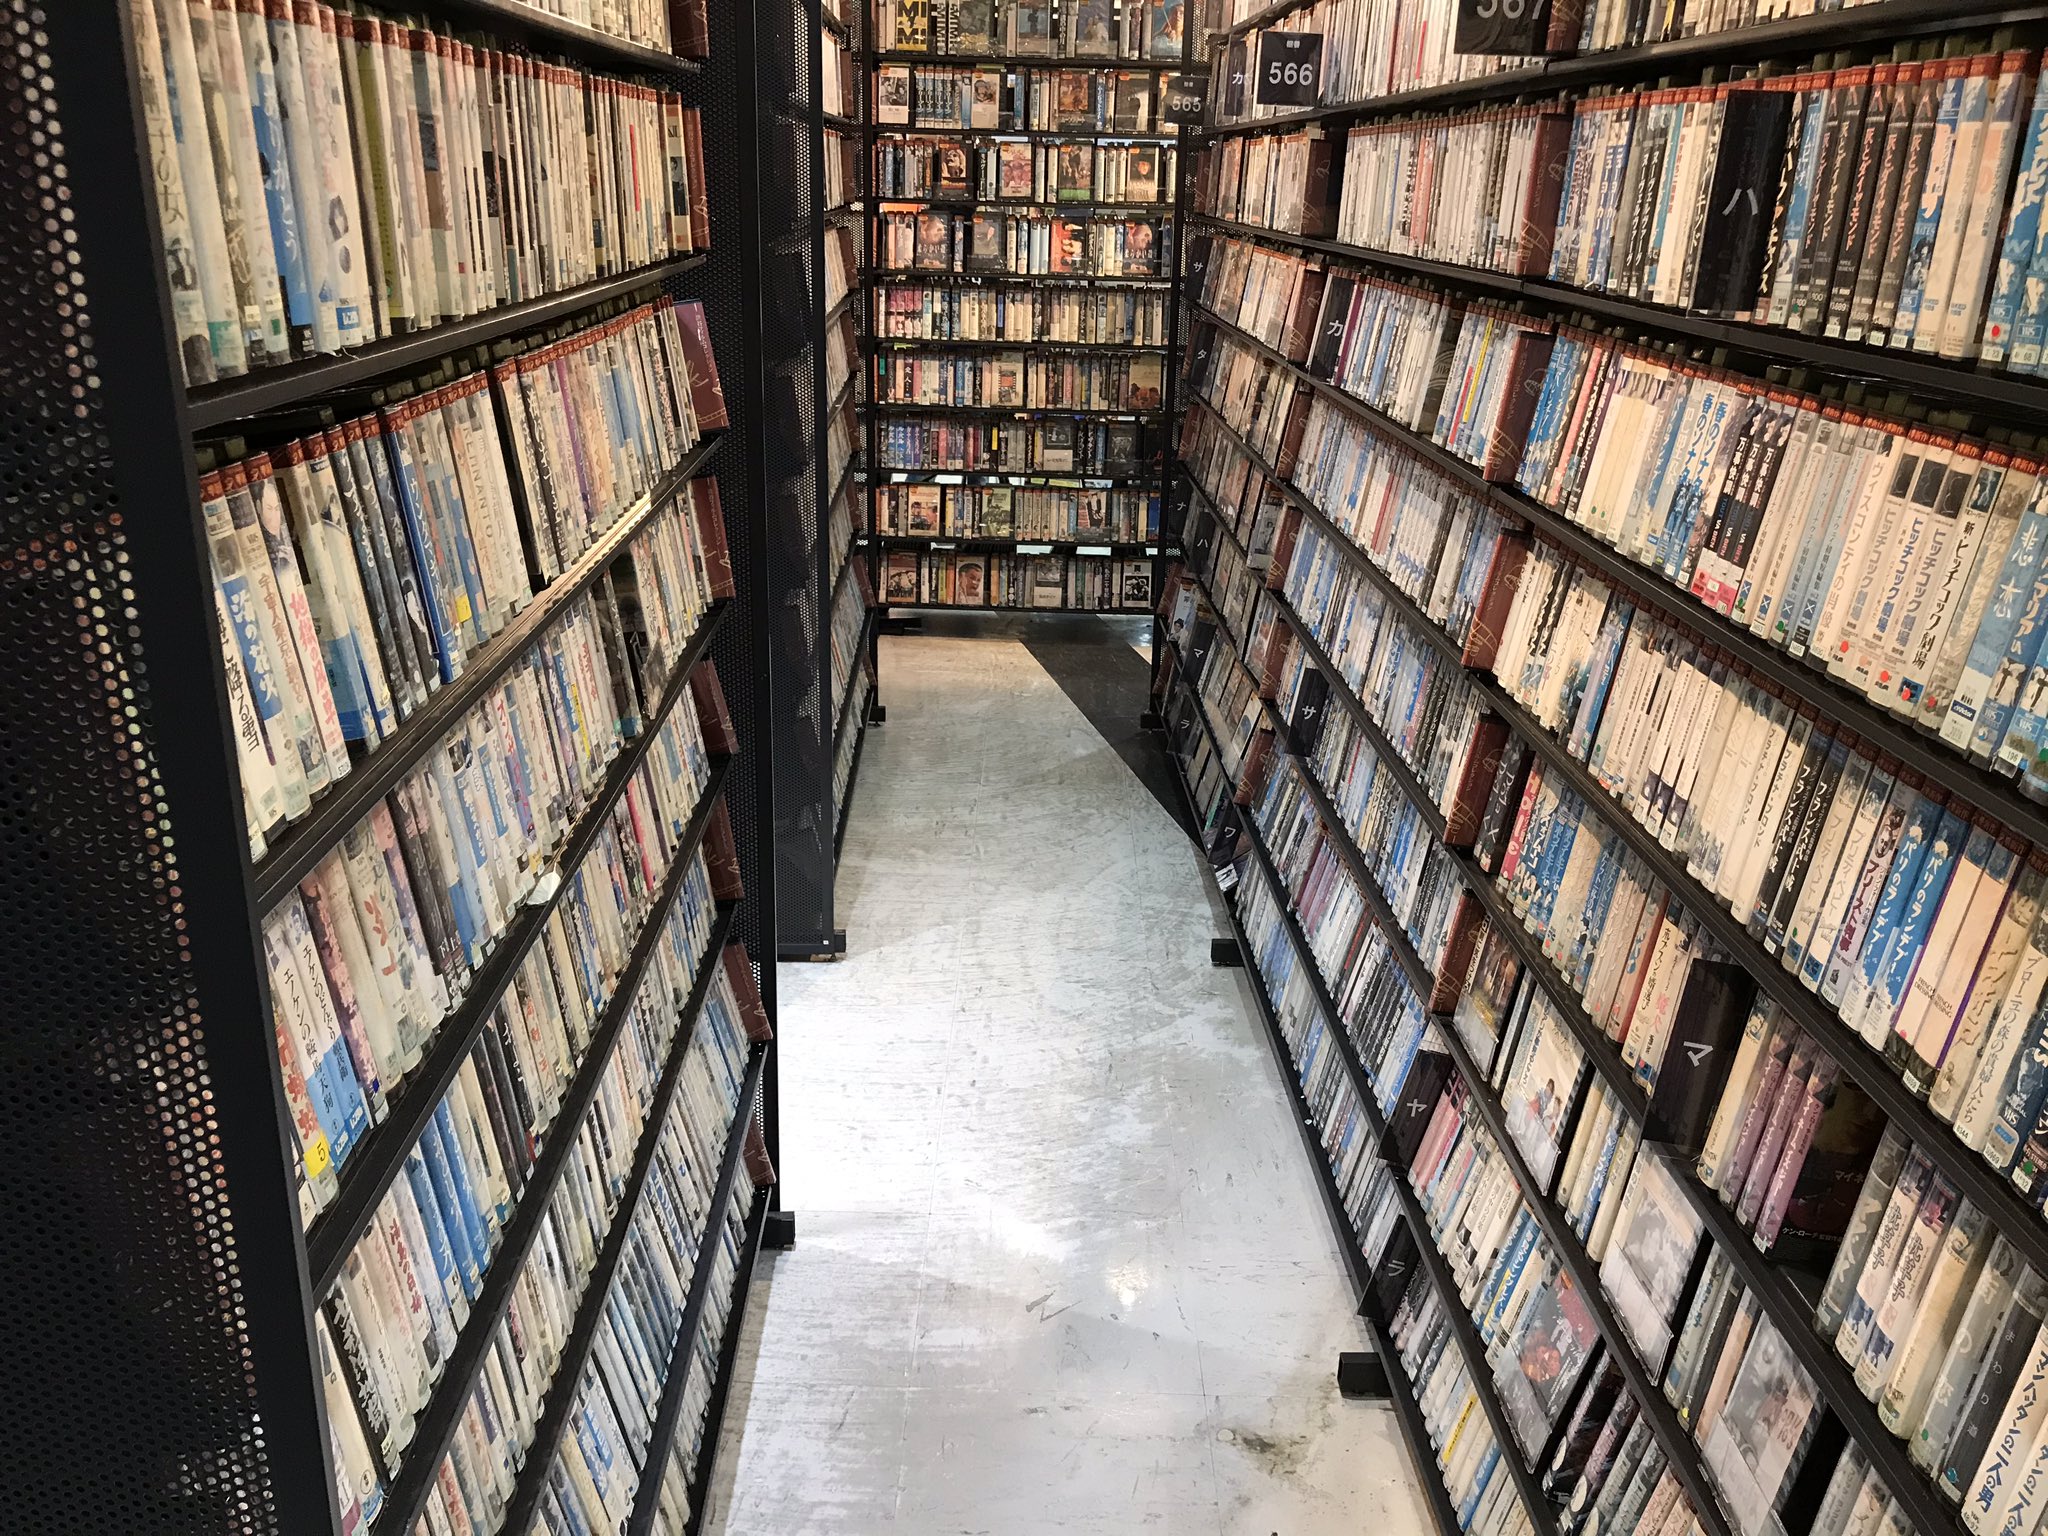 Locadora de vídeo localizada no centro de Tóquio, ainda conta com 6000 fitas VHS